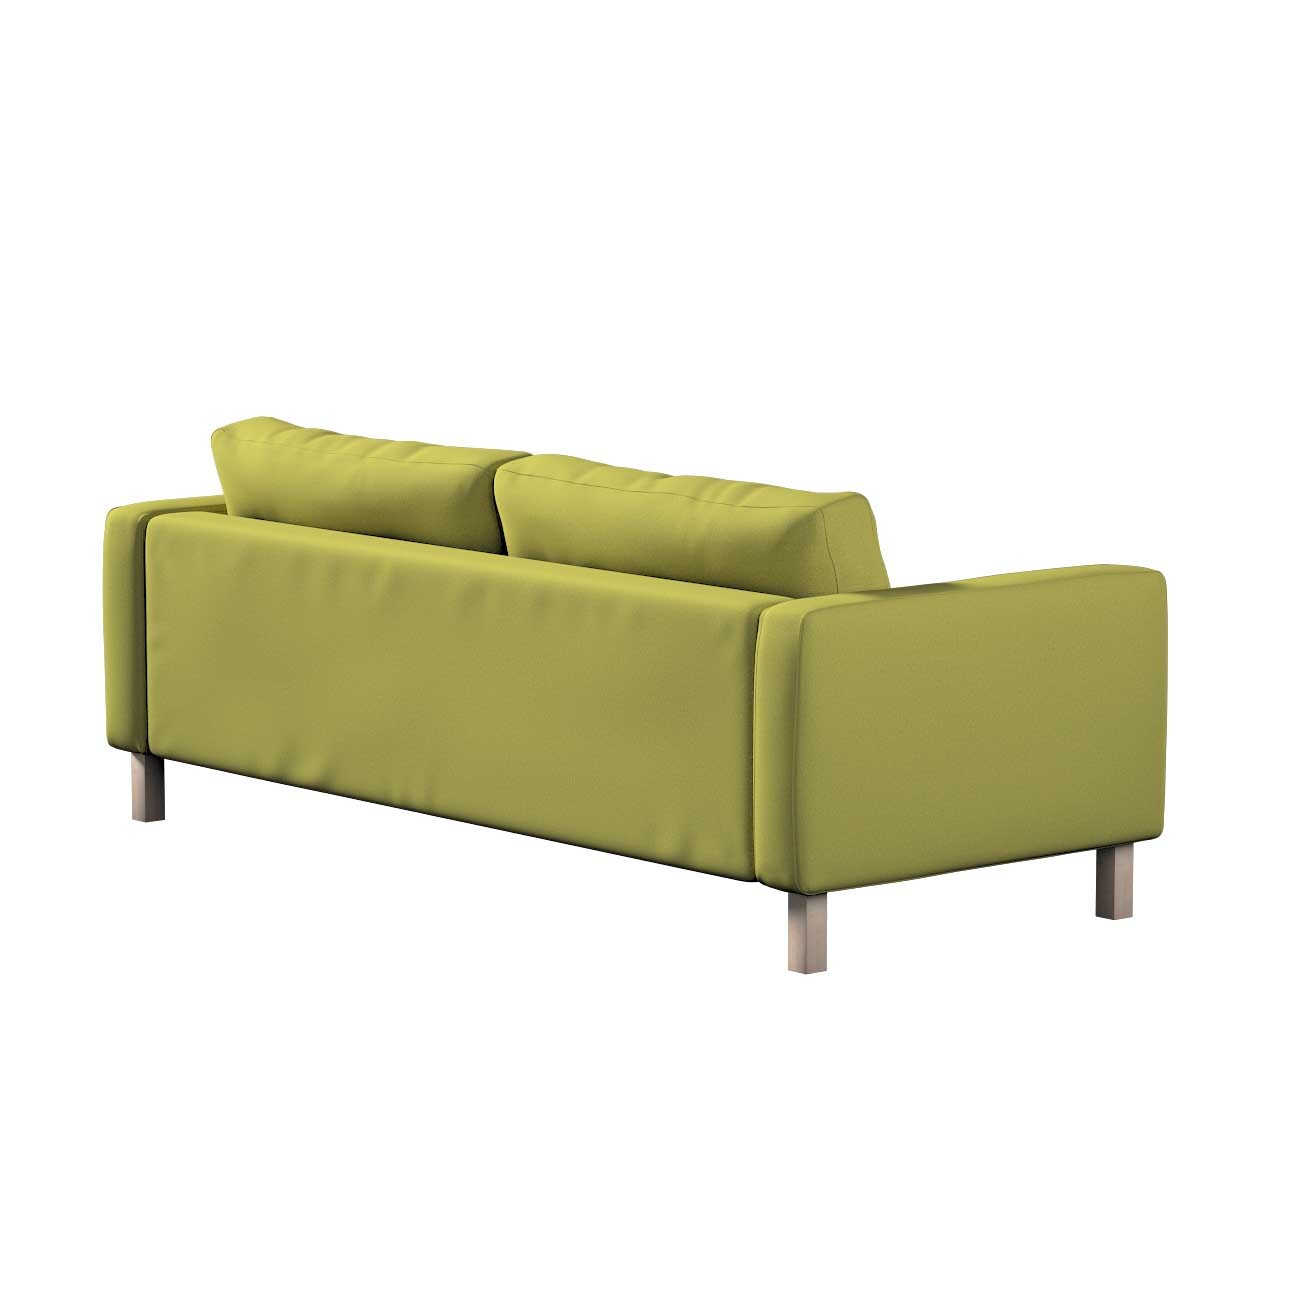 Bezug für Karlstad 3-Sitzer Sofa nicht ausklappbar, kurz, limone, Bezug für günstig online kaufen